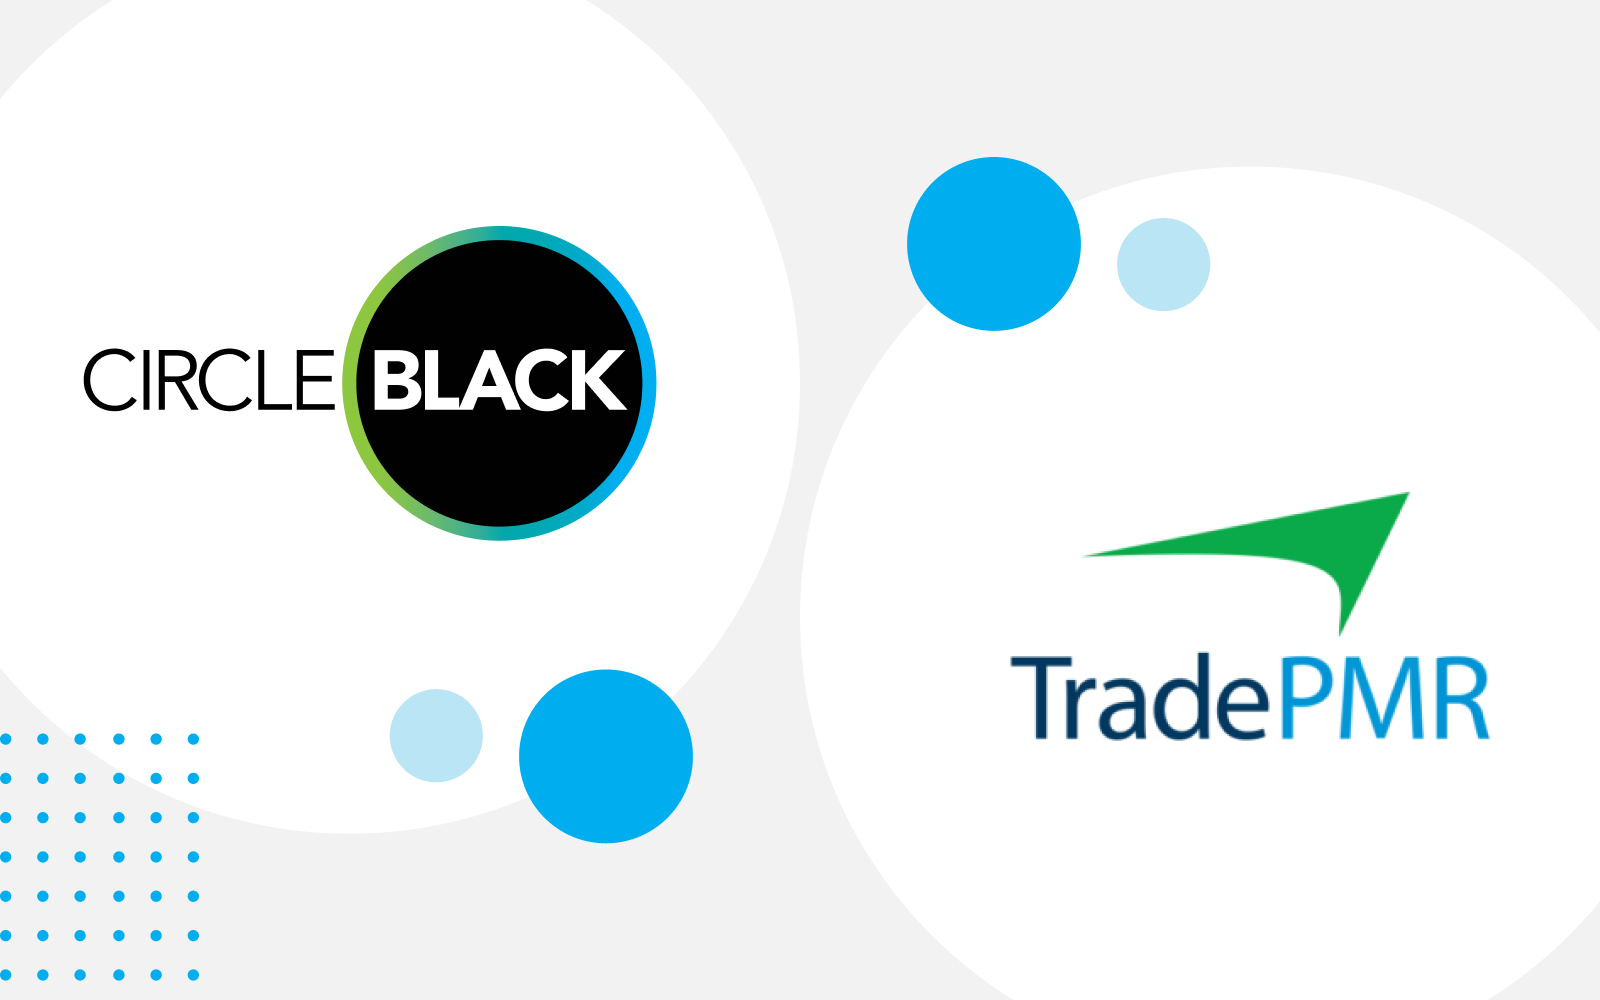 CircleBlack & Trade PMR logos